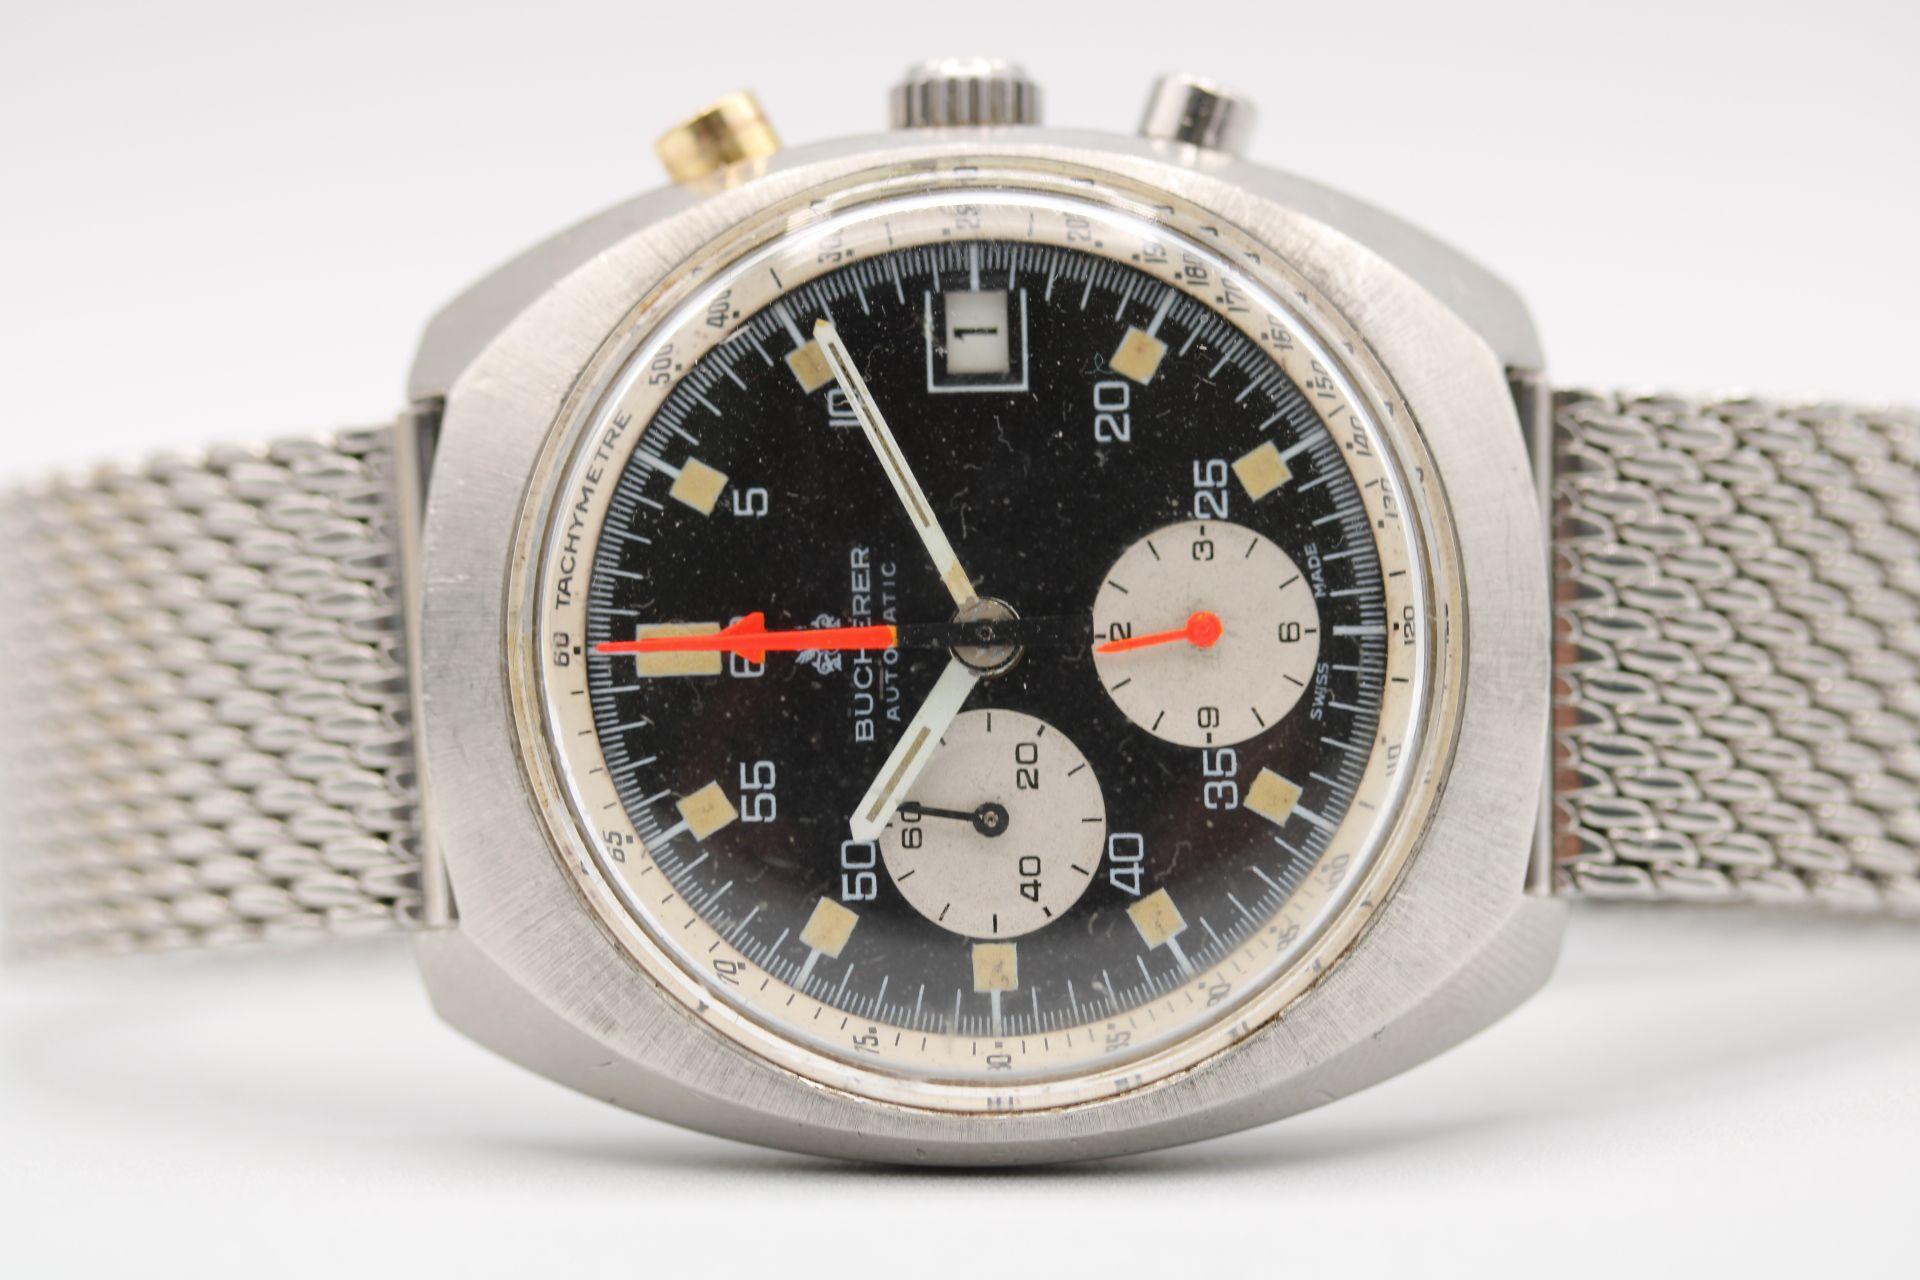 et un autre bijou vintage que nous avons réussi à trouver. Nous sommes ravis de pouvoir proposer cette montre-bracelet Carl F Bucherer 1340 Lemania Chronograph qui est livrée en tant que montre seule en plus de notre garantie de 12 mois. 

Le